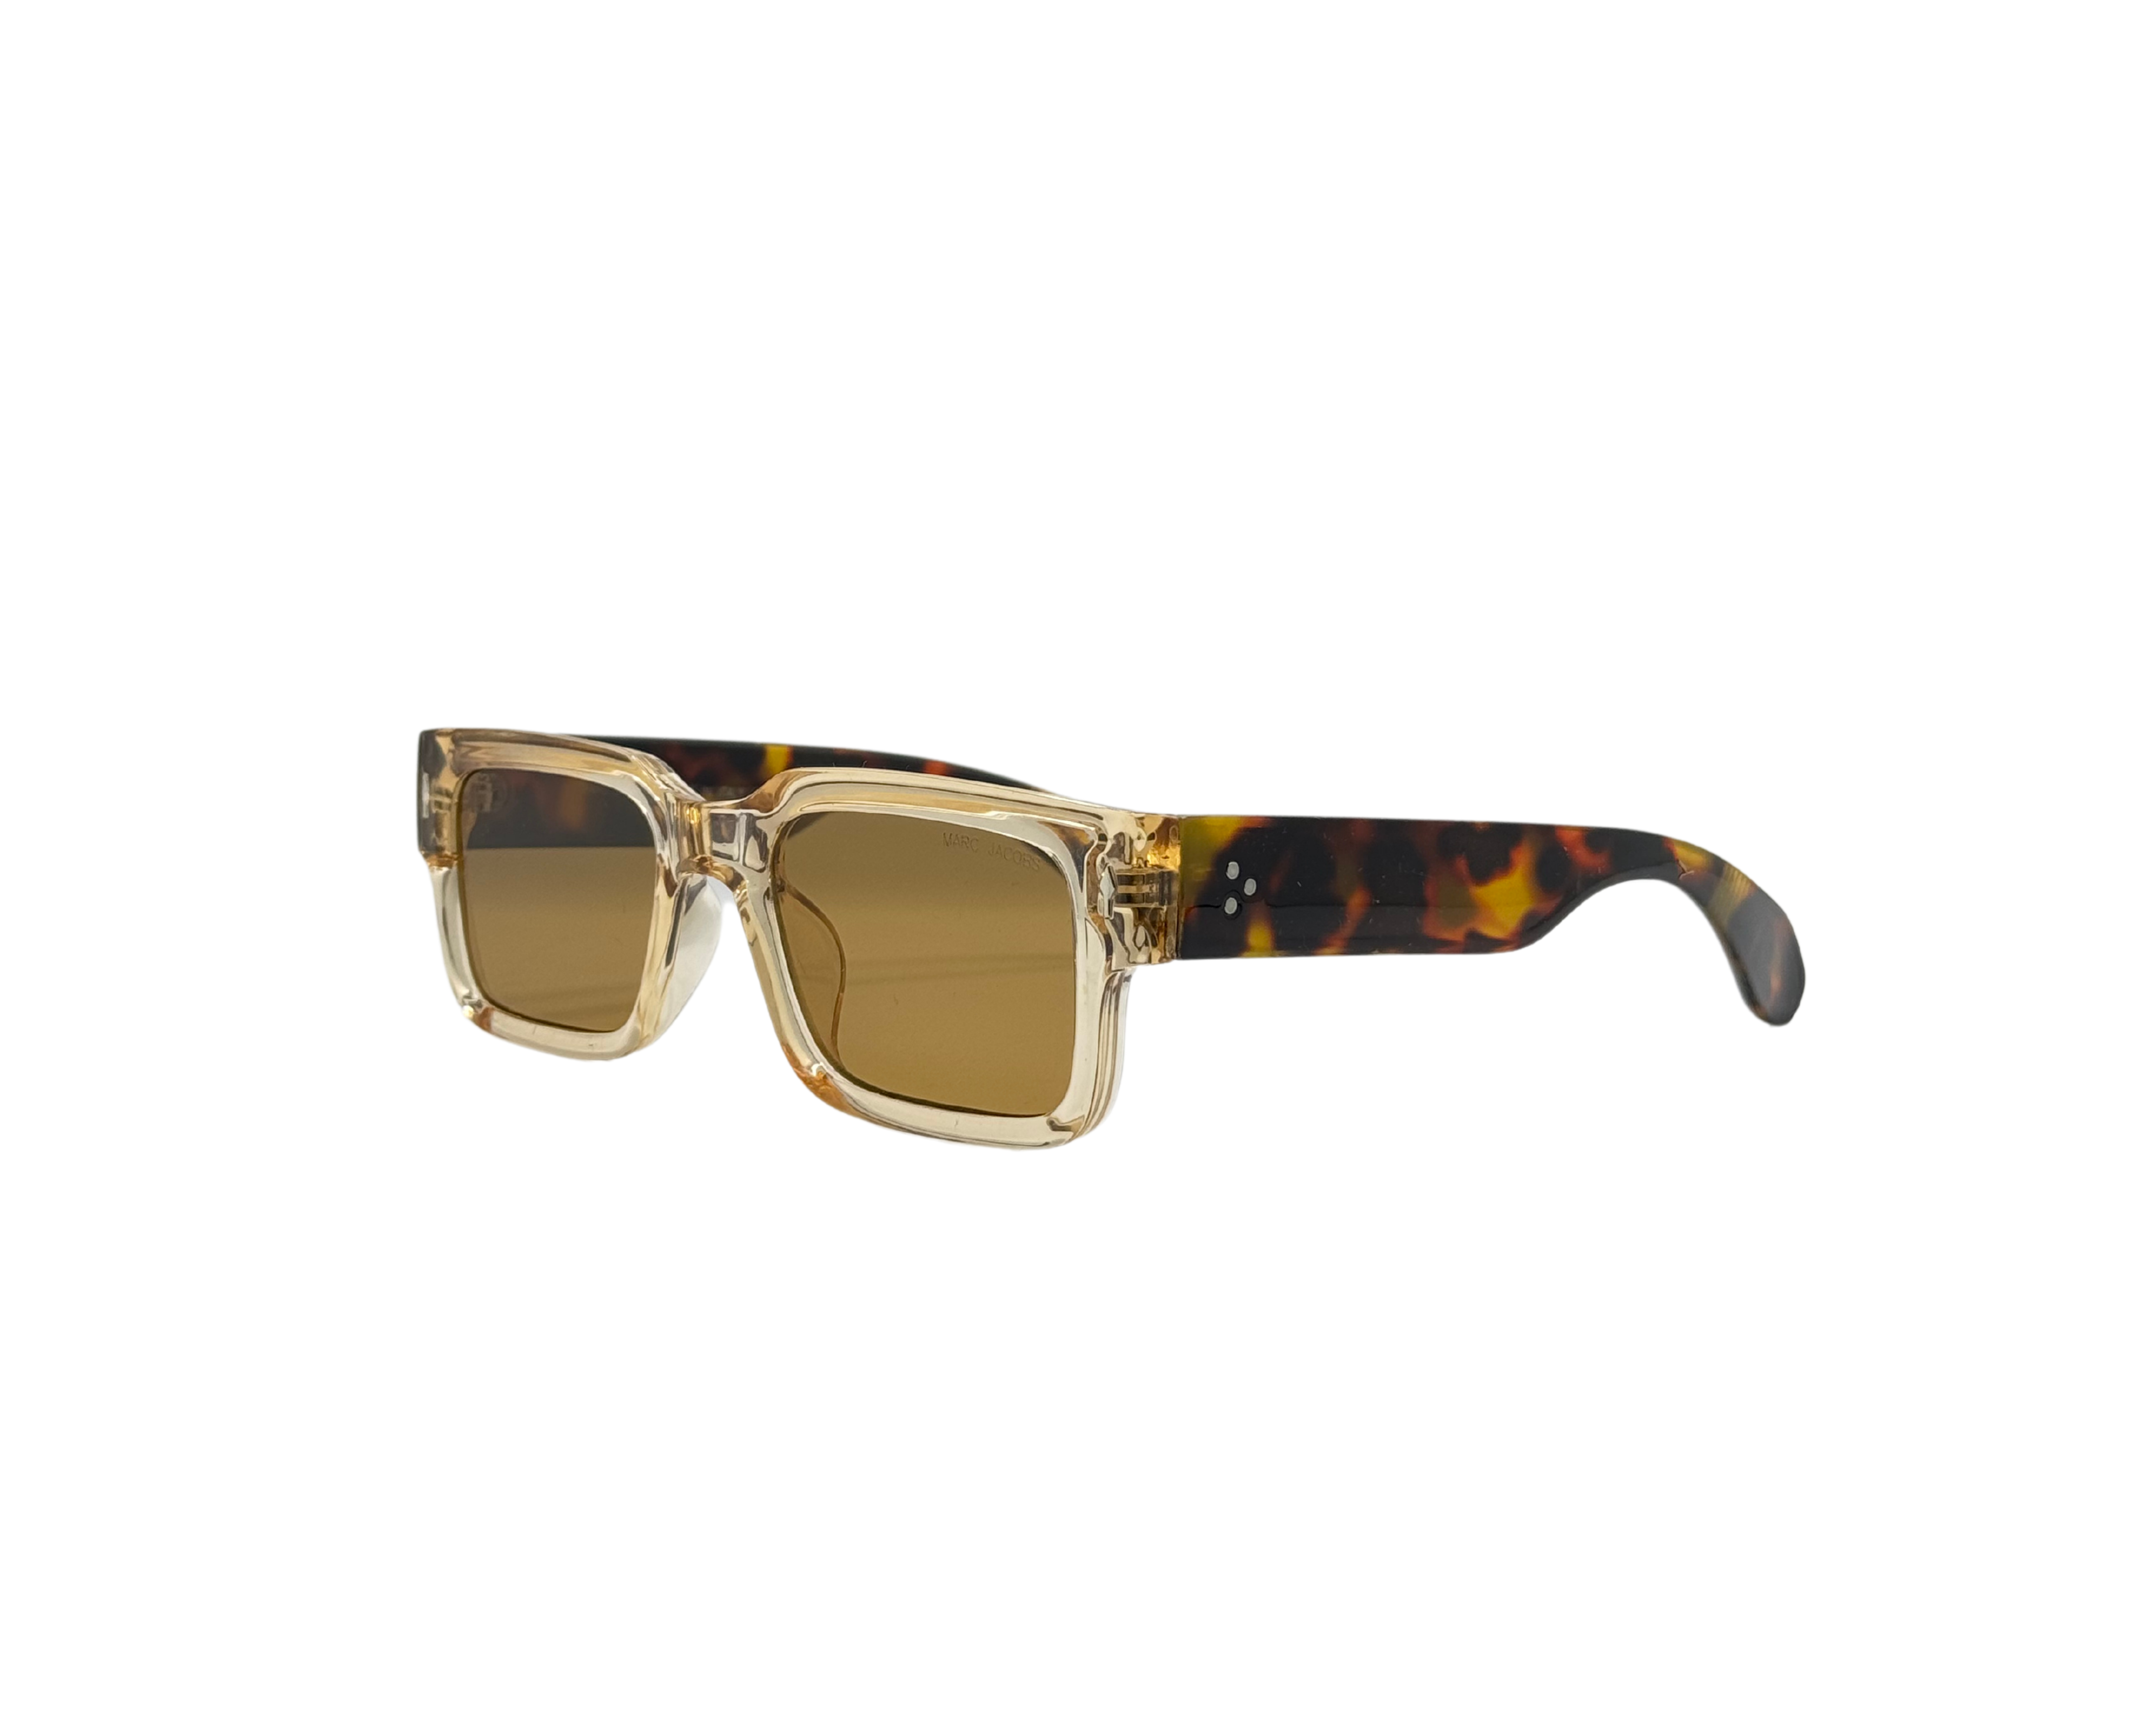 NS Deluxe - 6768 - Tortoise - Sunglasses